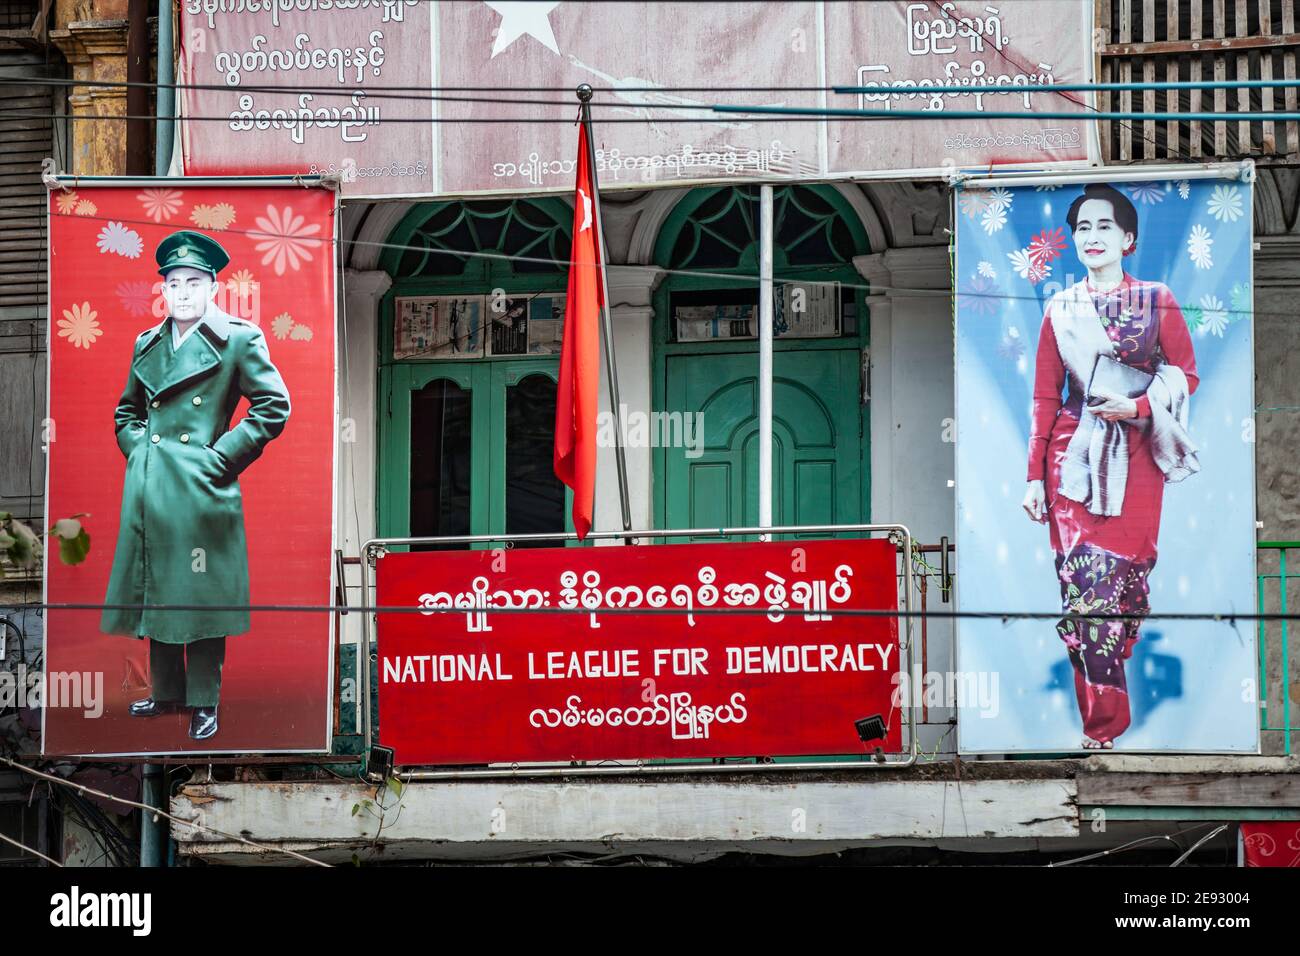 YANGON, MYANMAR - 2 JANVIER 2016 : Bureau de la Ligue nationale pour la démocratie avec des portraits d'Aung San et d'Aung San Suu Kyi à Yangon, au Myanmar. Banque D'Images